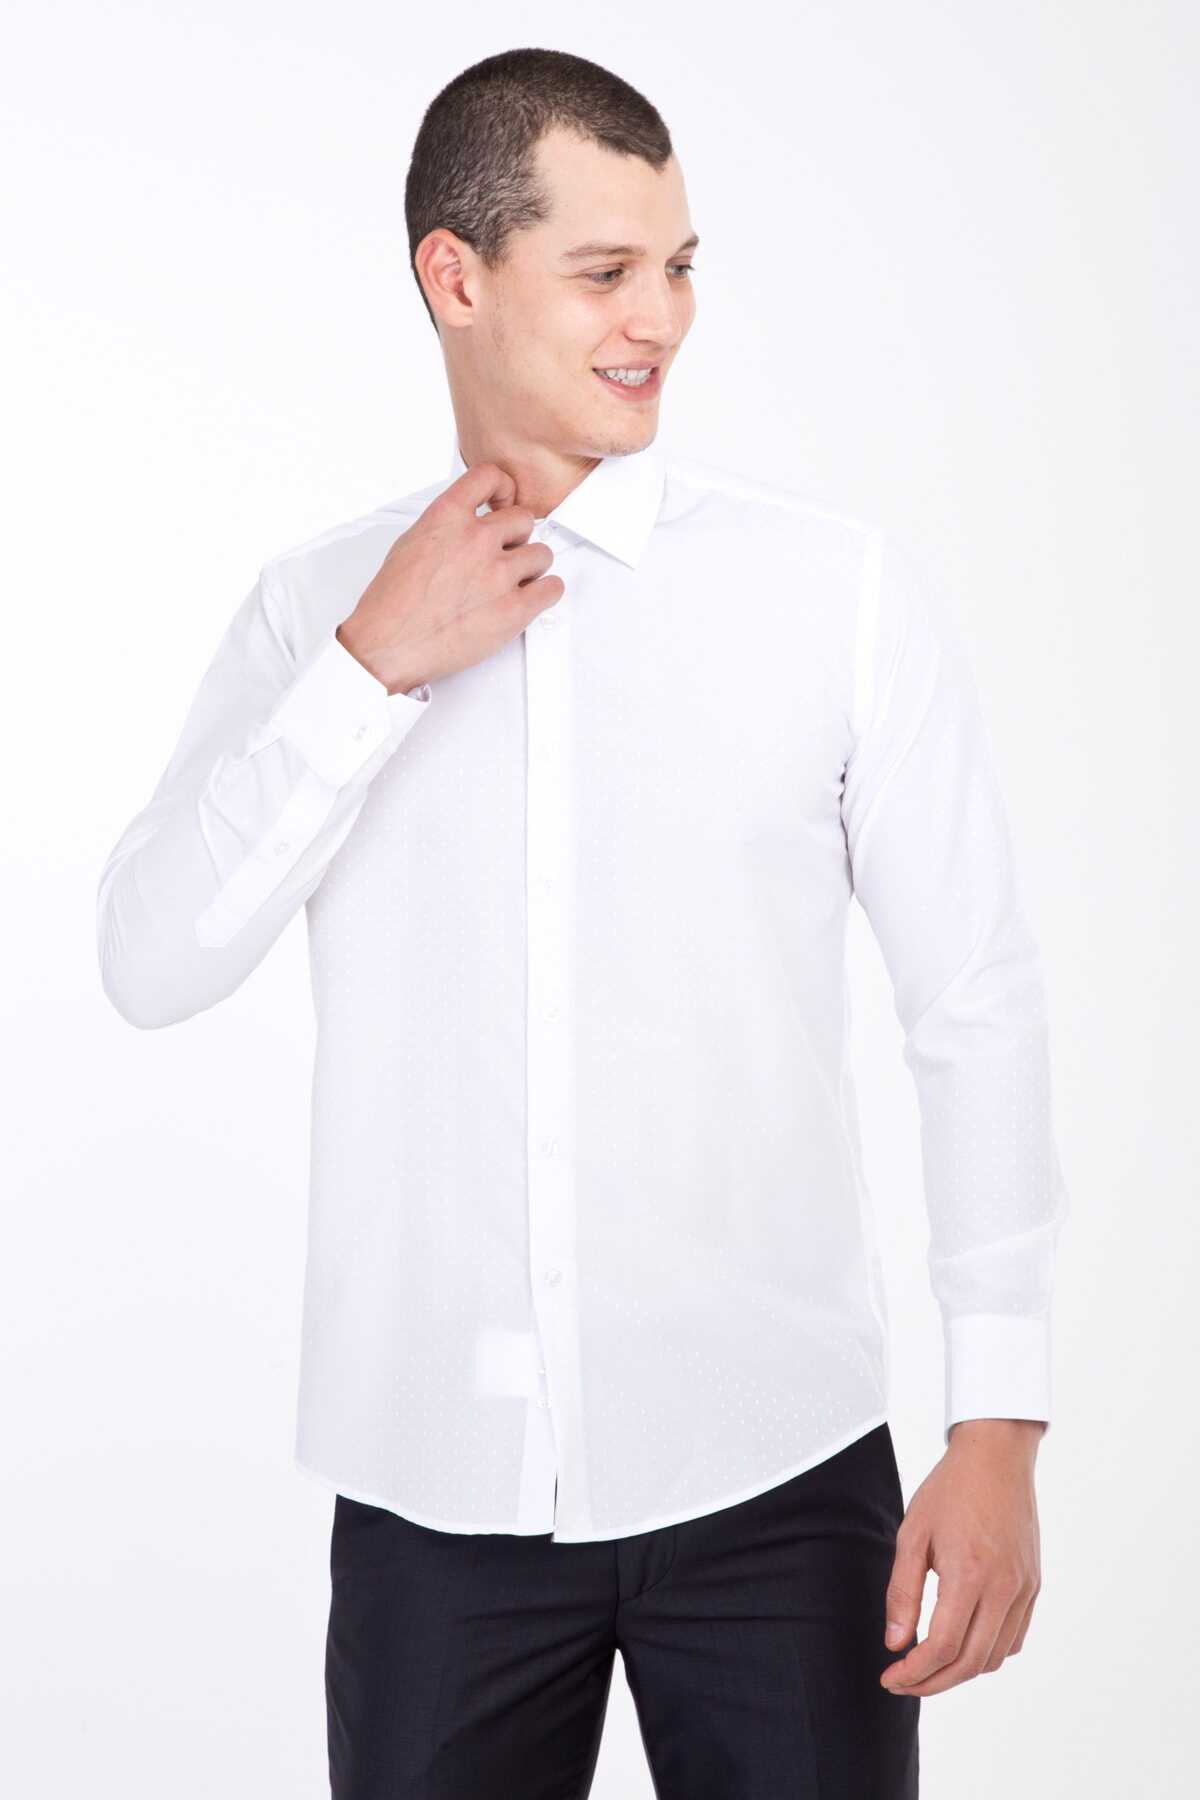 پیراهن کلاسیک مردانه سفید برند Kiğılı 